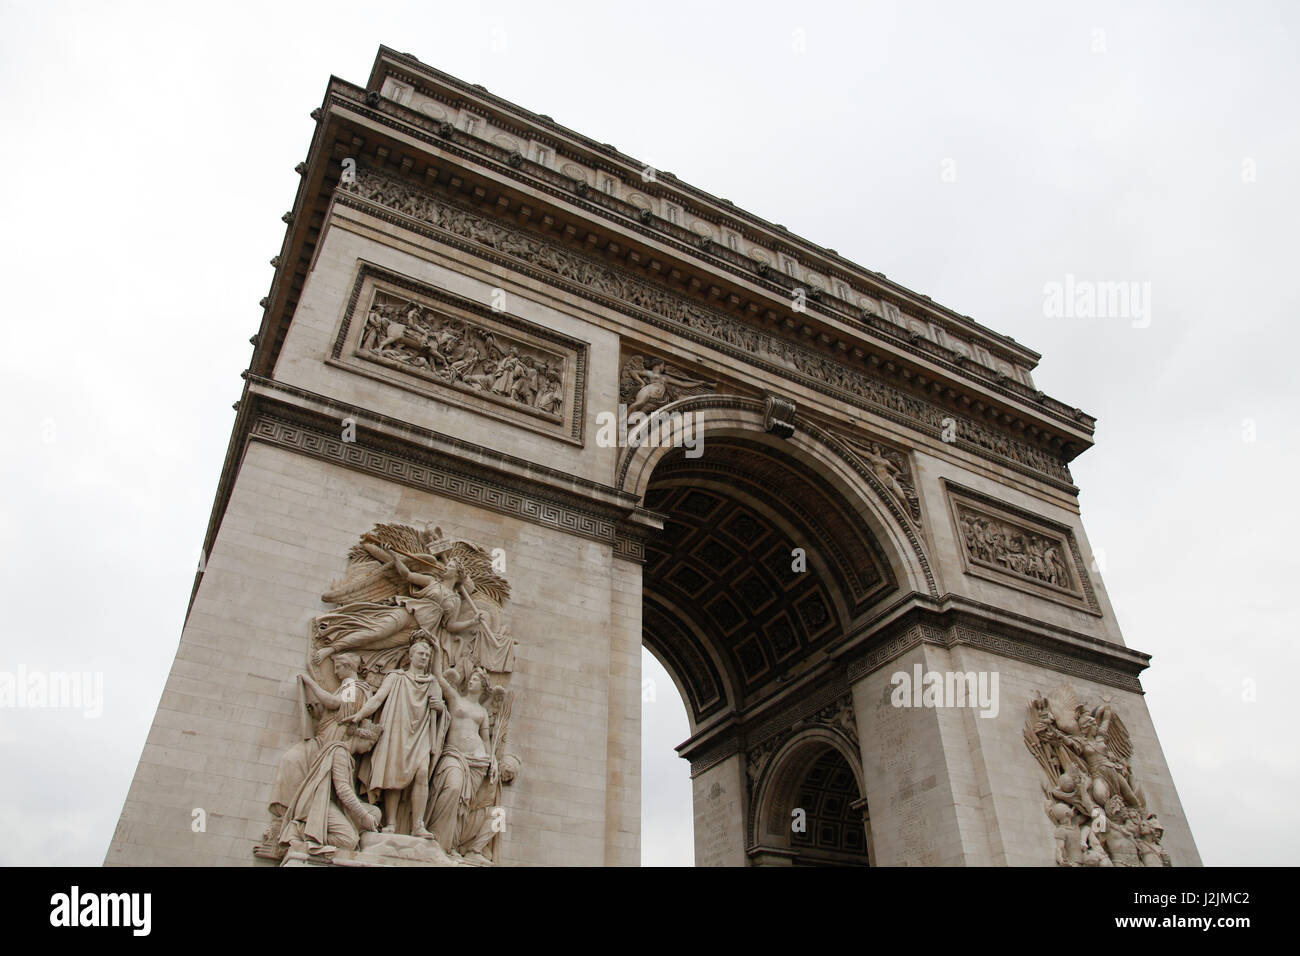 Arc De Triomphe Monument steht am westlichen Ende des Champs-Élysées im Zentrum Des Place Charles de Gaulle, Paris, Frankreich. Stockfoto